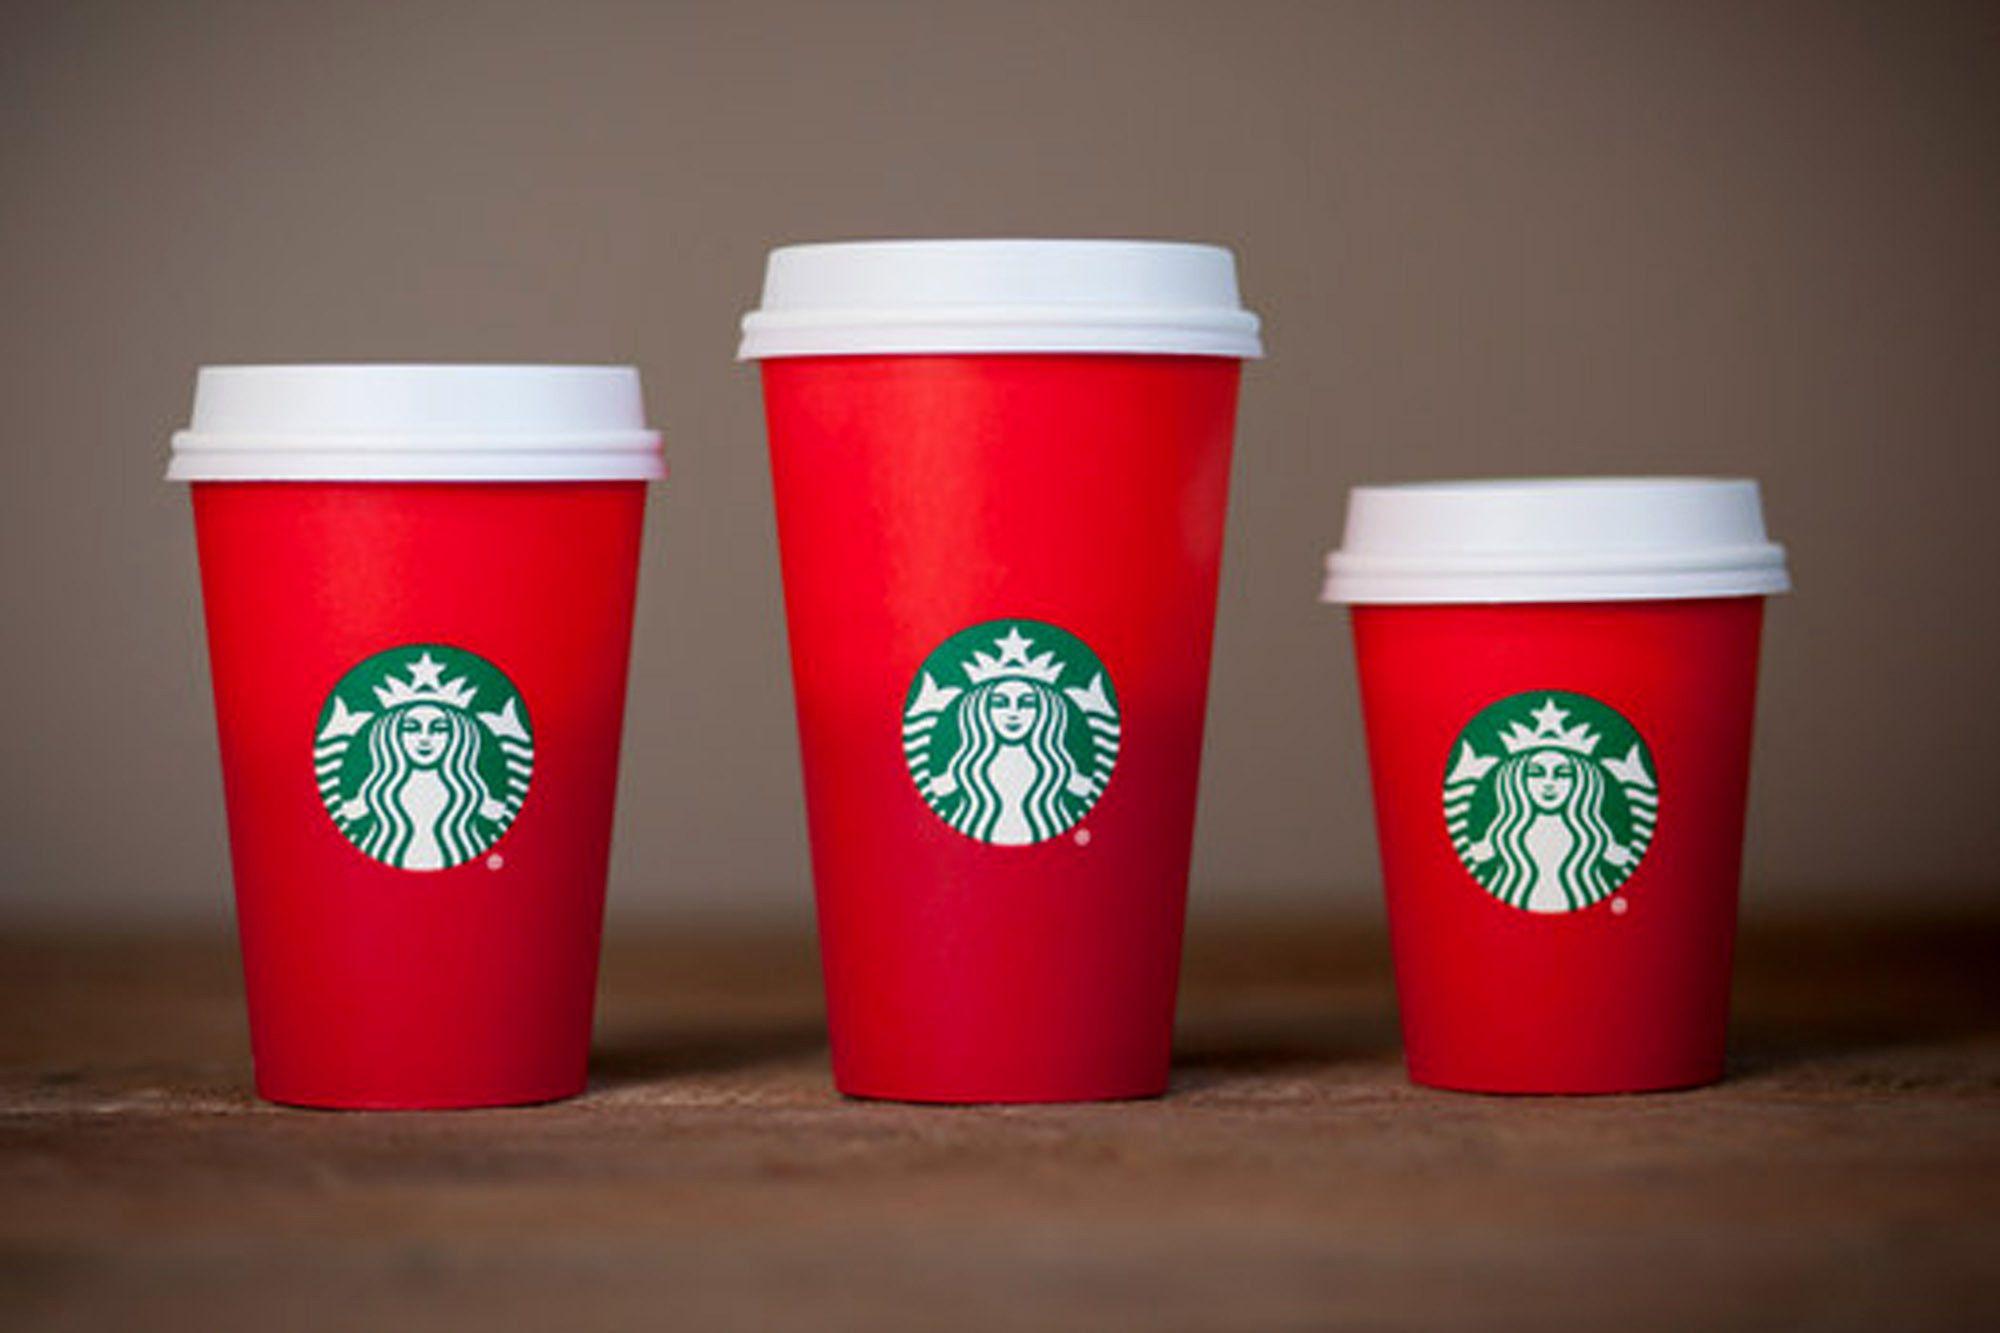 Starbucks Christmas Logo - Christian group slams Starbucks holiday cup as 'war on Christmas'